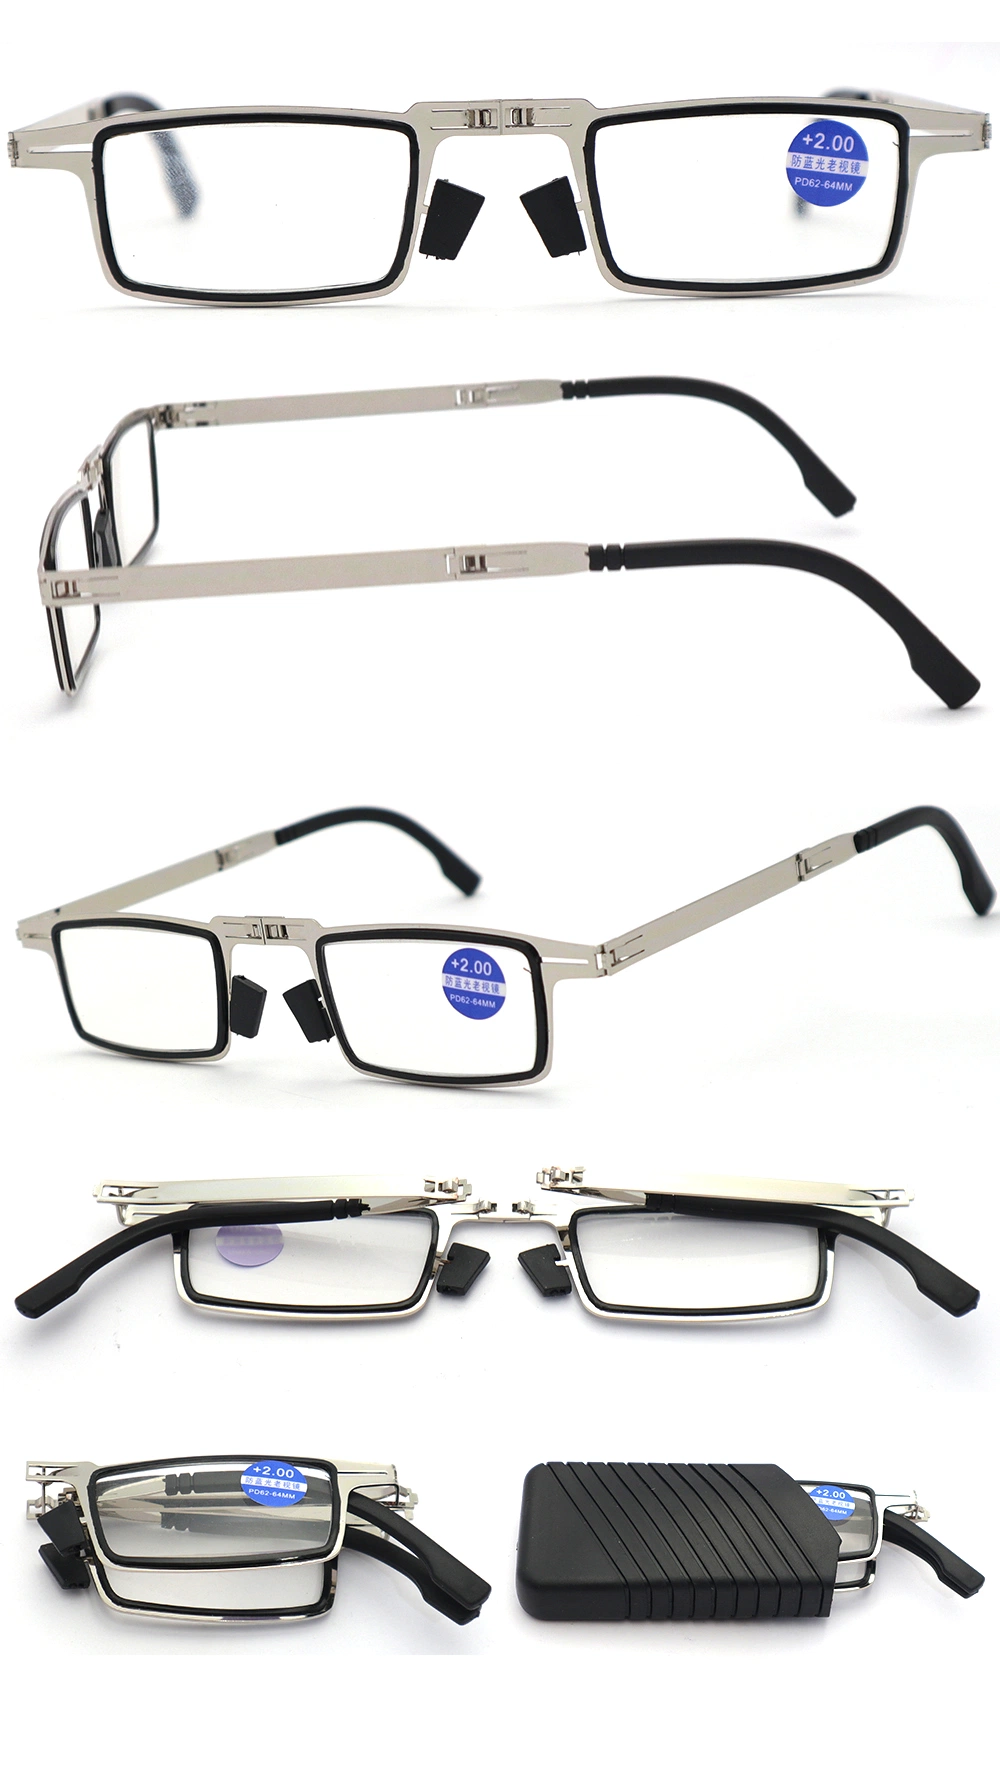 Custom Folding Reading Glasses Blue Light Blocking Retro Metal Frame Clear Lens Glasses